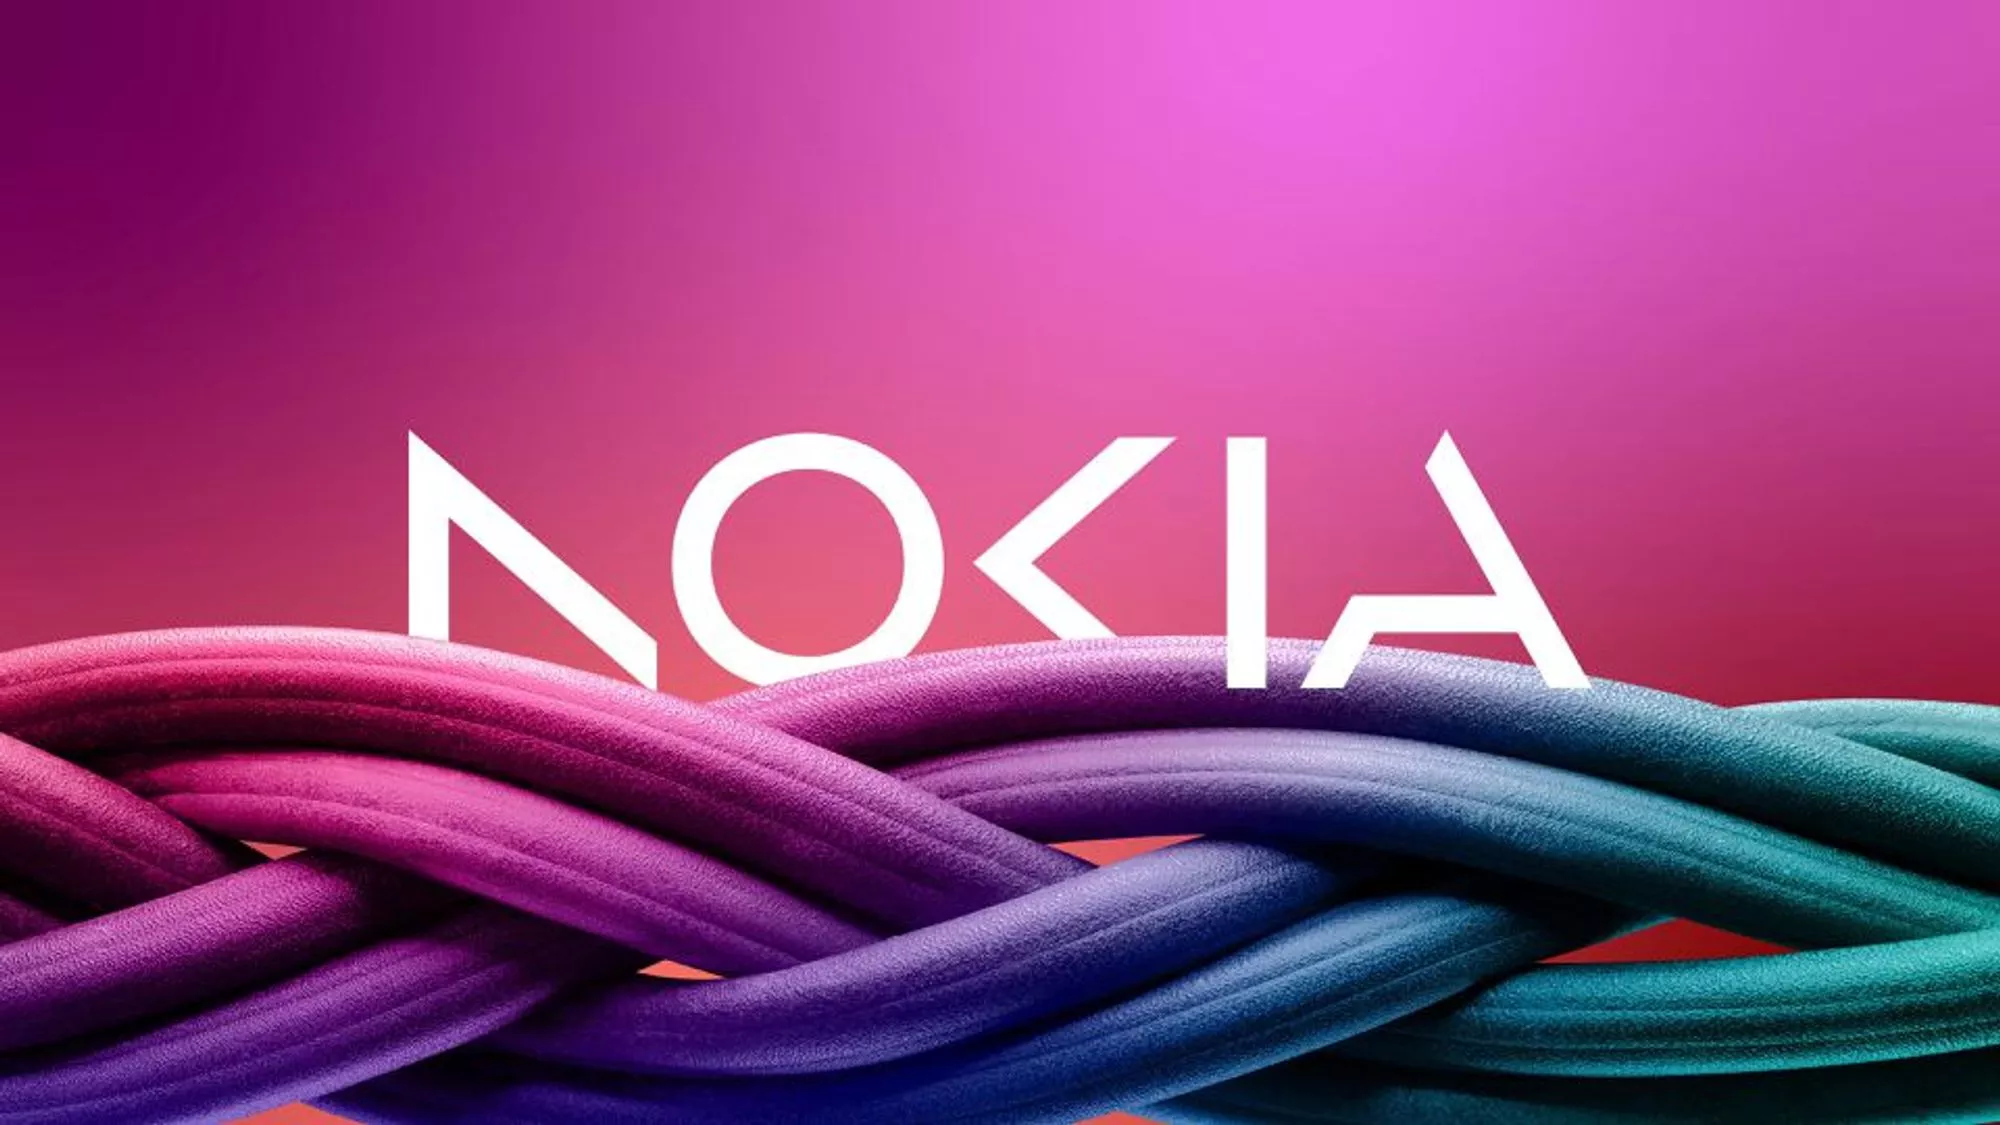 NOKIA đổi logo sau 60 năm, hướng tới sự thay đổi chiến lược mạnh mẽ